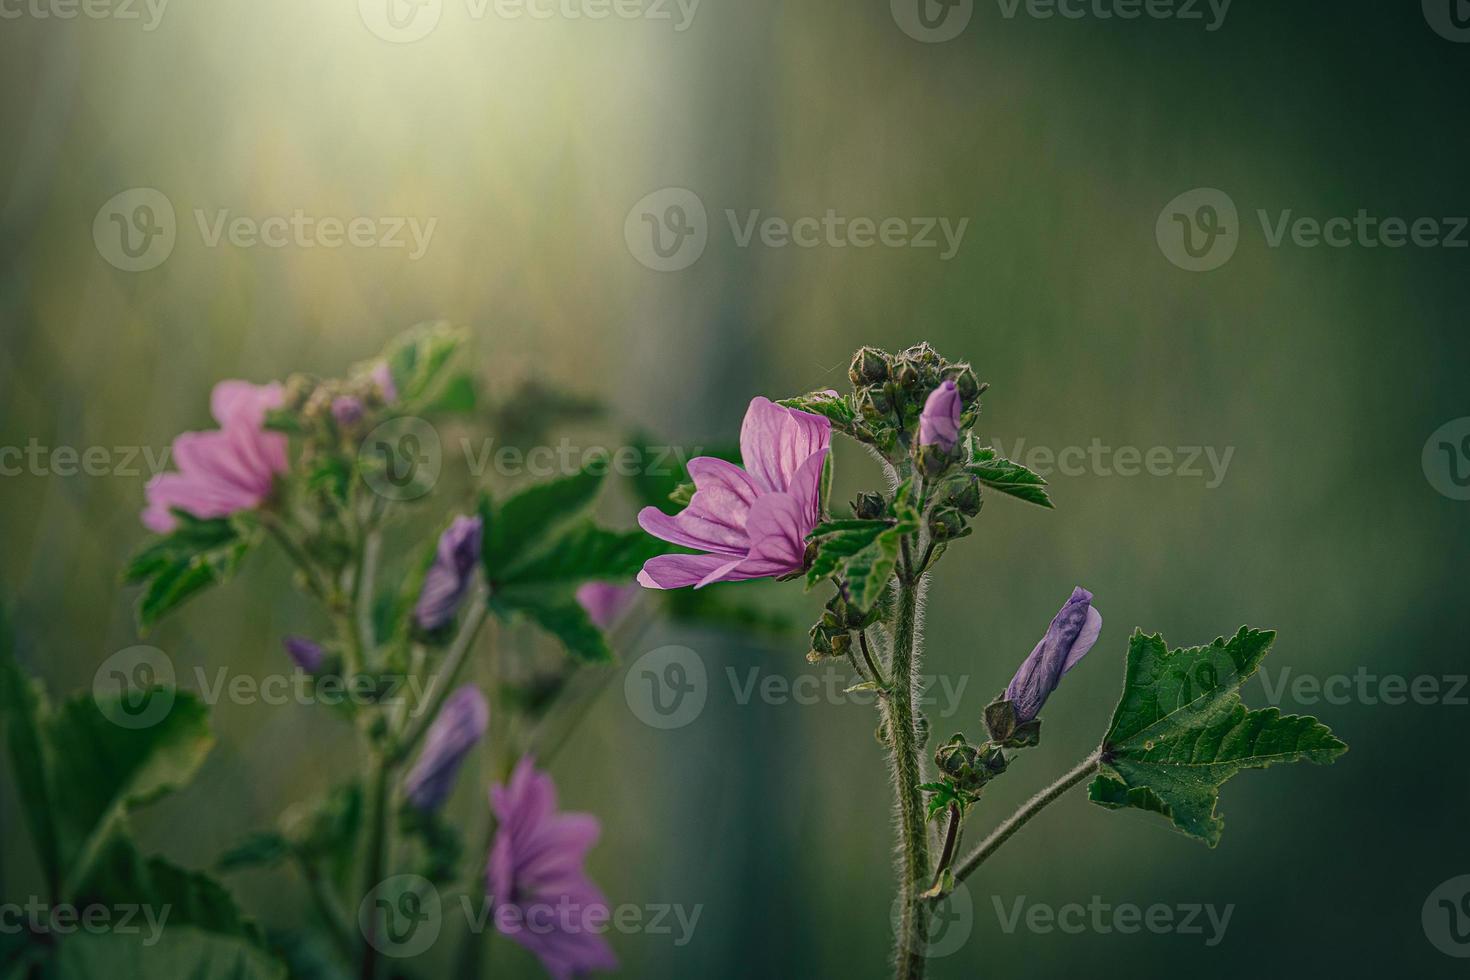 selvaggio viola selvaggio malva fiore su verde prato su primavera giorno nel avvicinamento foto